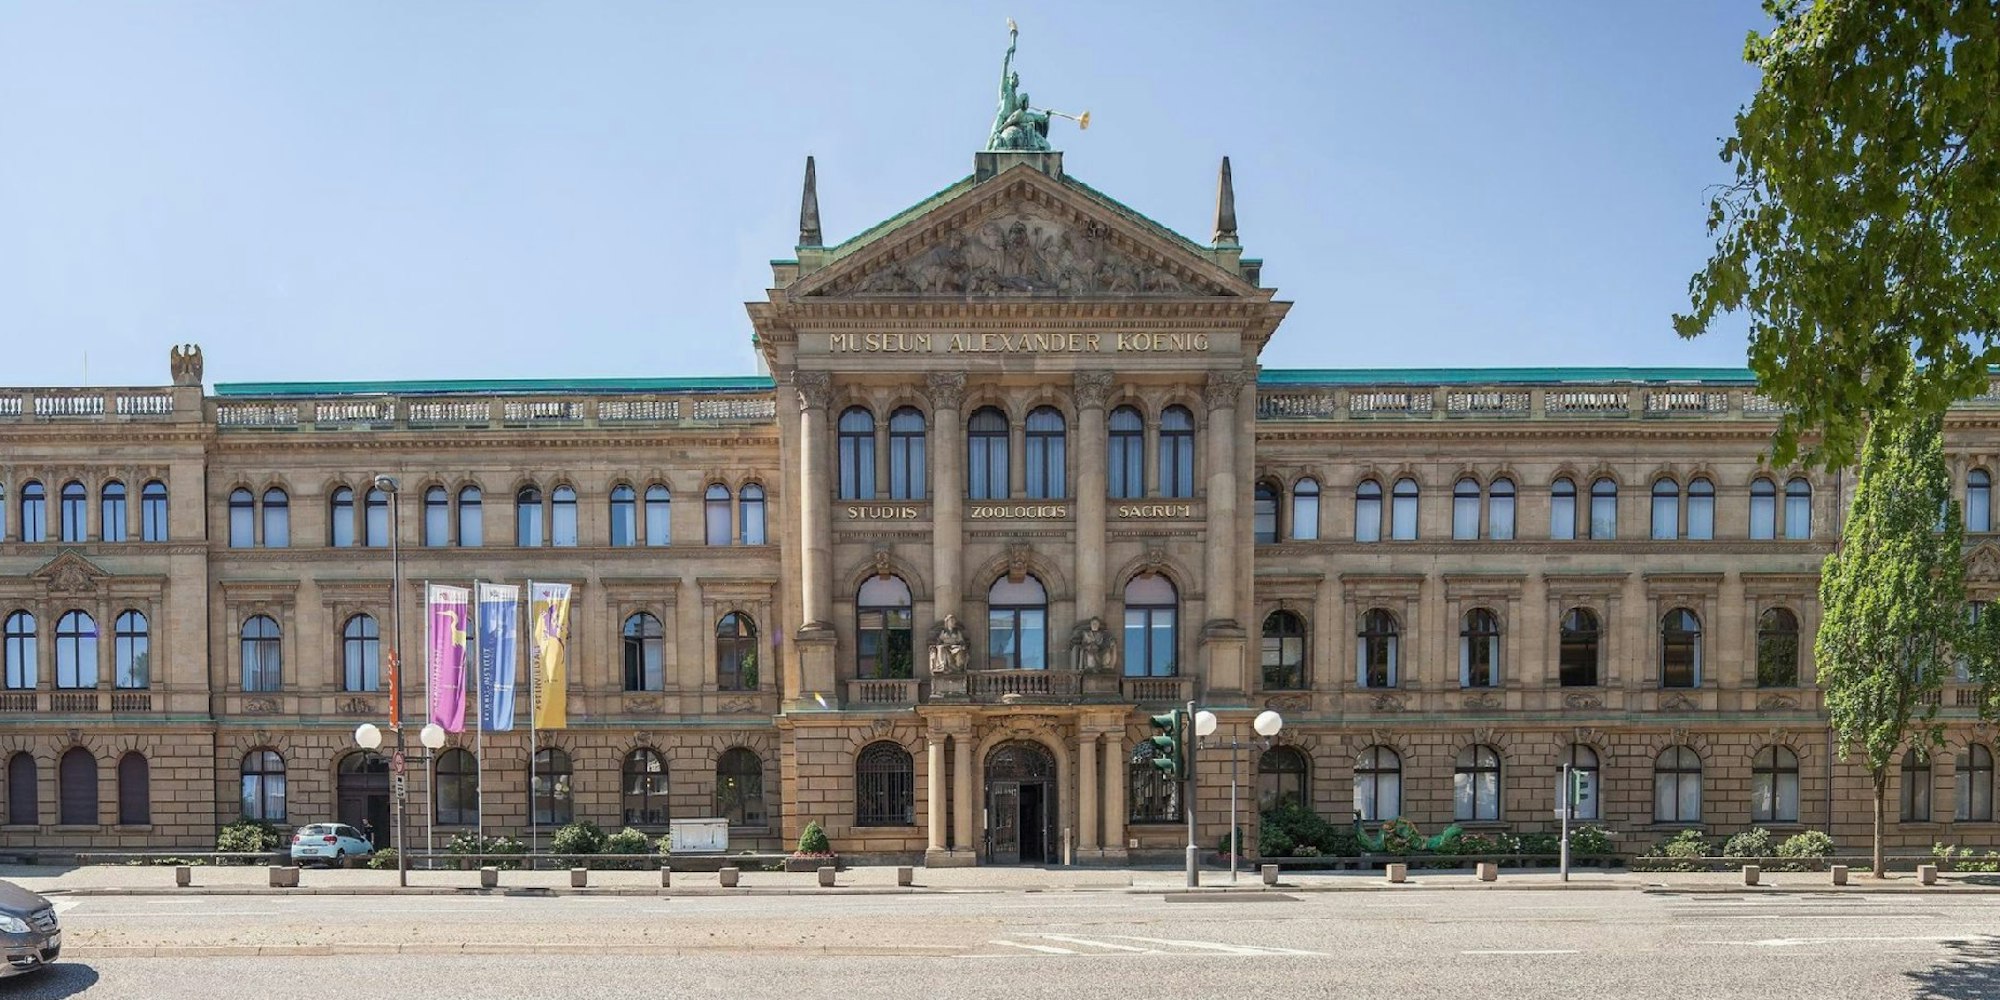 Vor 100 Jahren wurde der Grundstein für das Hauptgebäude gelegt. Das Museum Koenig feiert am Wochenende Jubiläum und zeigt eine neue Ausstellung zur Geschichte des Hauses.